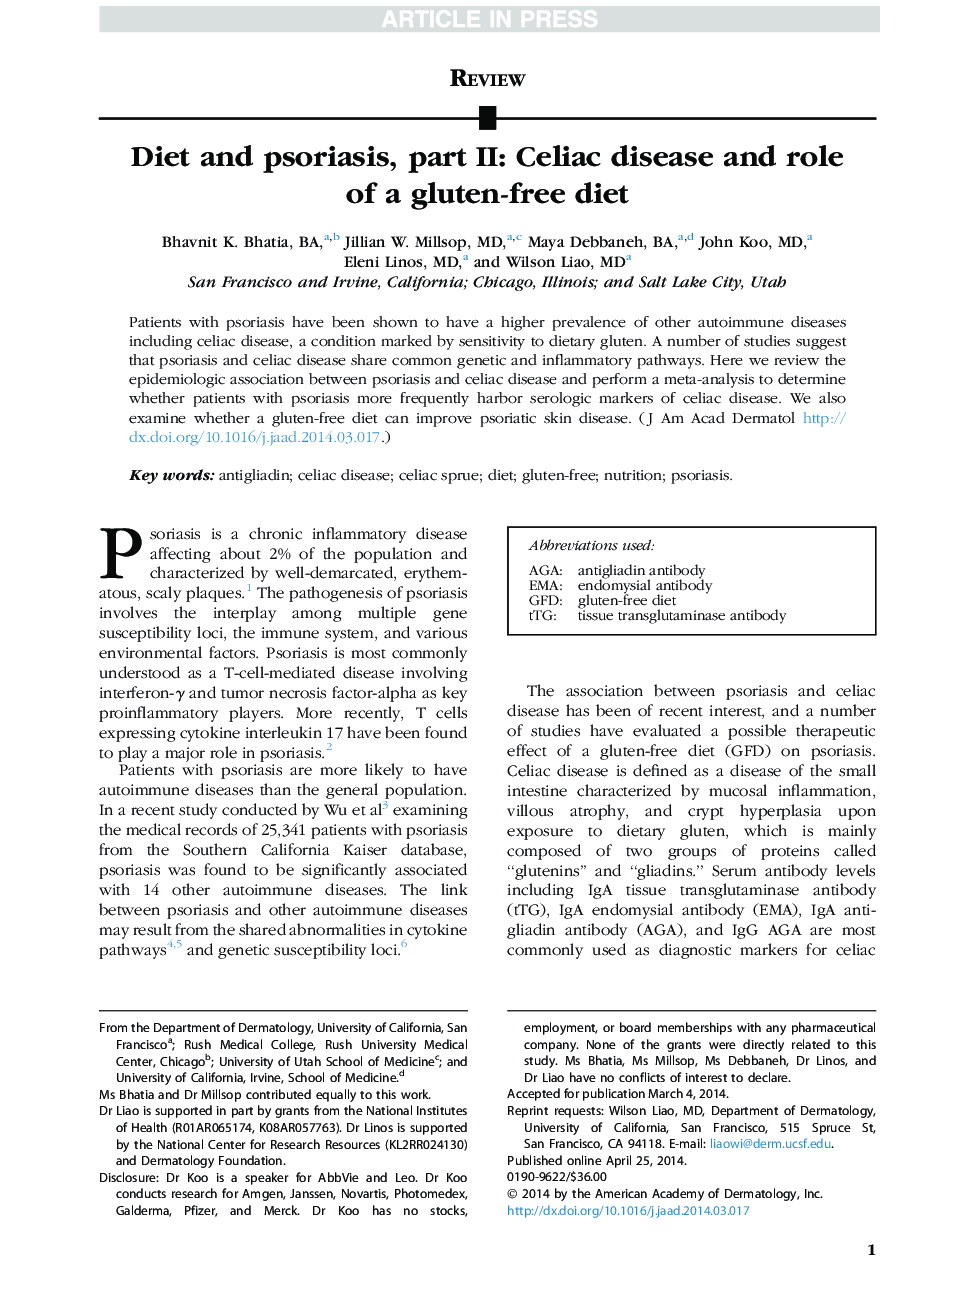 رژیم غذایی و پسوریازیس، قسمت دوم: بیماری سلیاک و نقش یک رژیم غذایی بدون گلوتن 